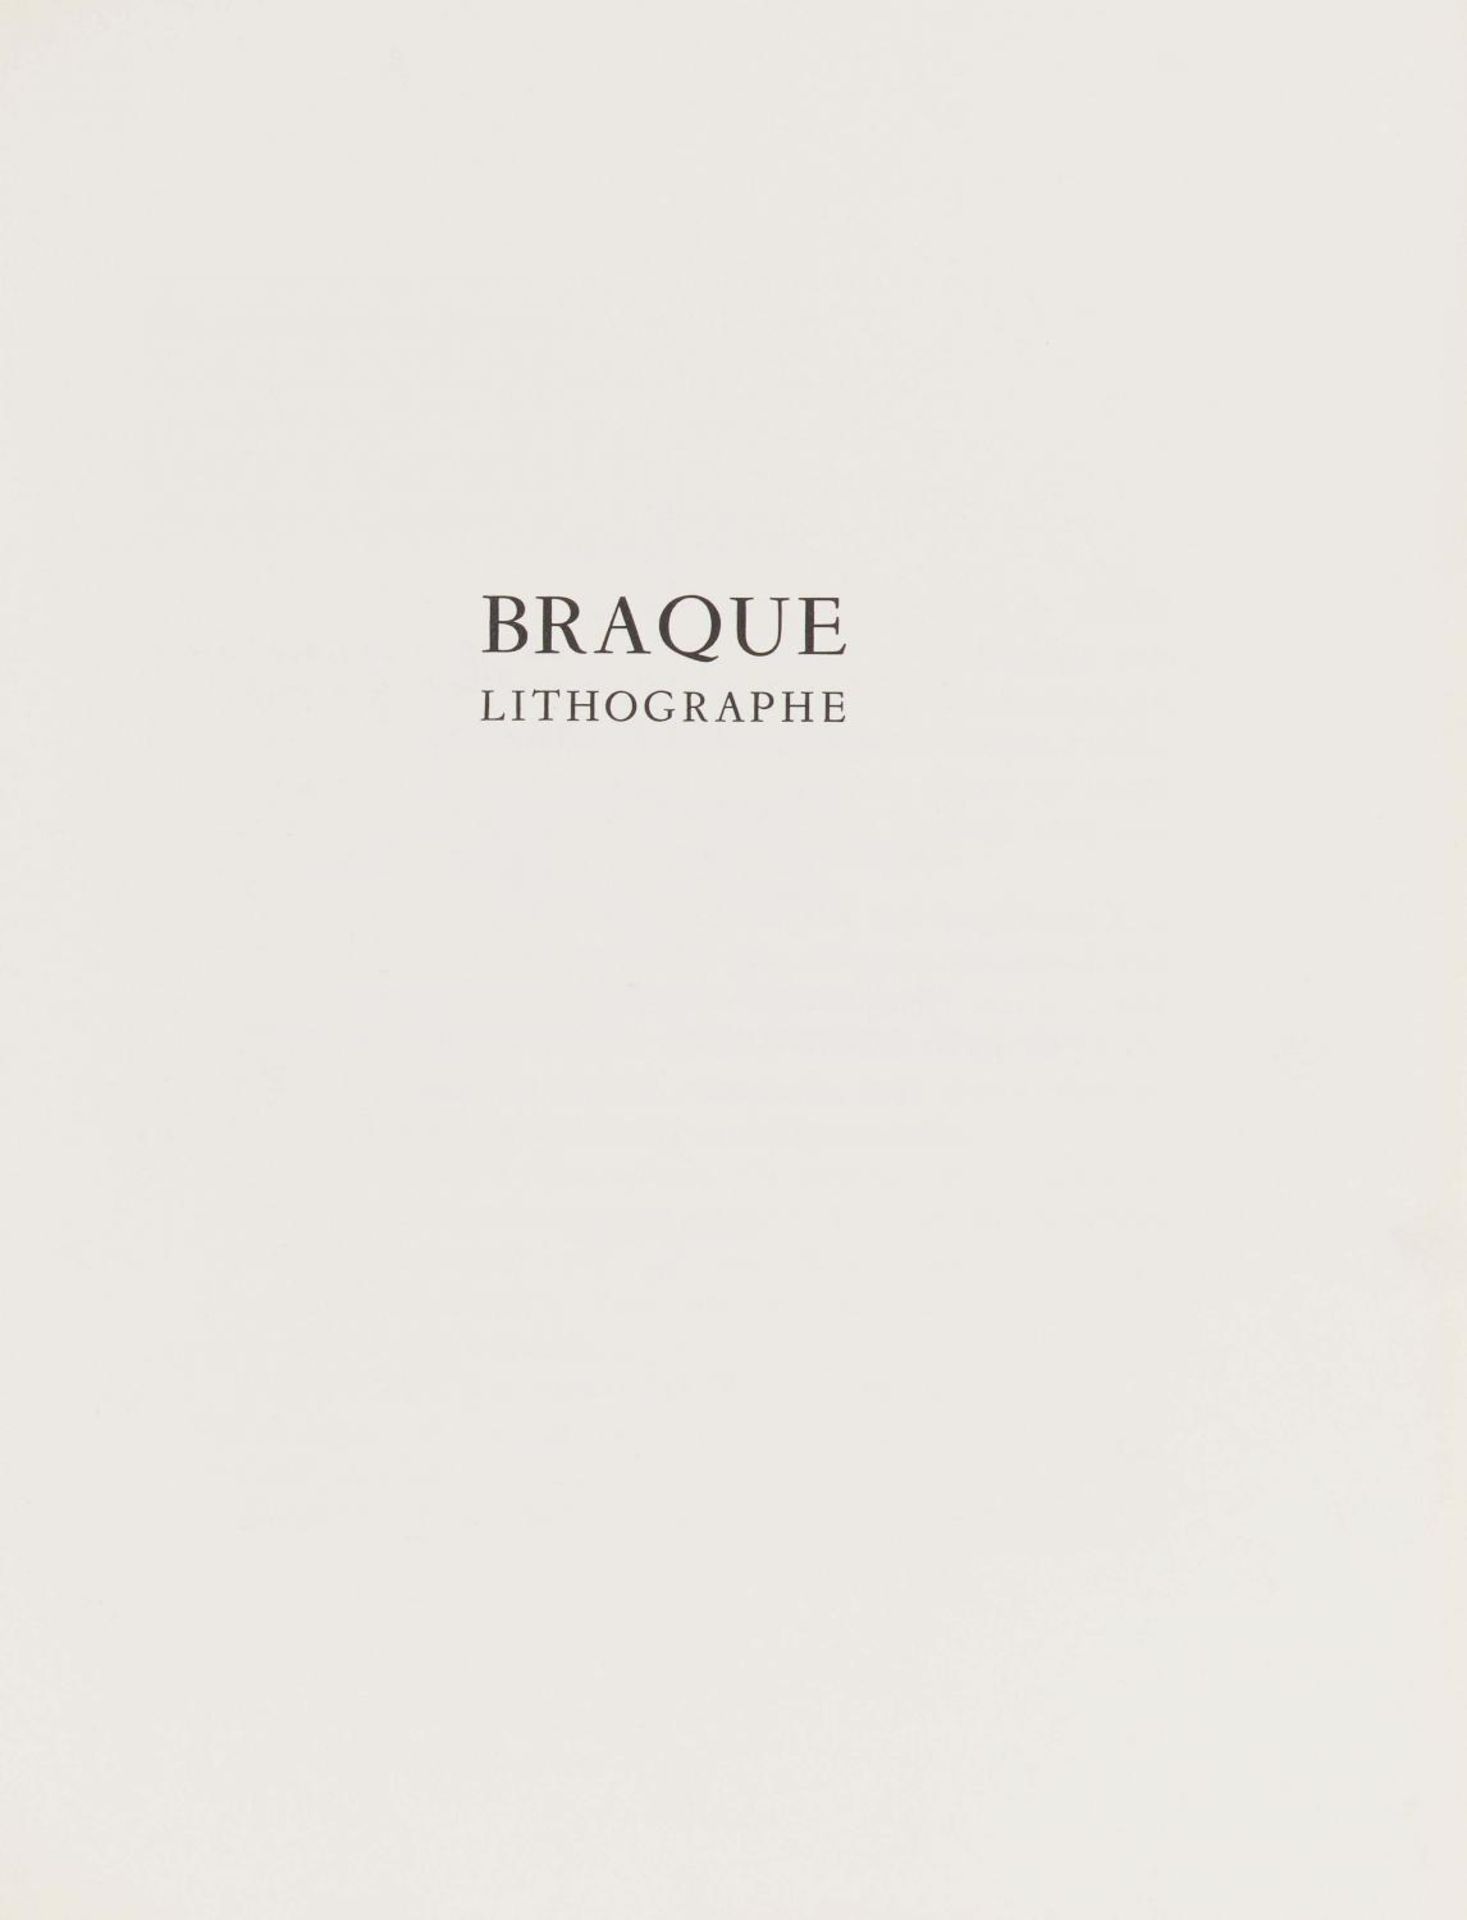 Braque, Georges1881 Argenteuil - 1963 ParisLithographe. 1963. Komplettes Buch (Deluxe Edition) mit - Bild 10 aus 13